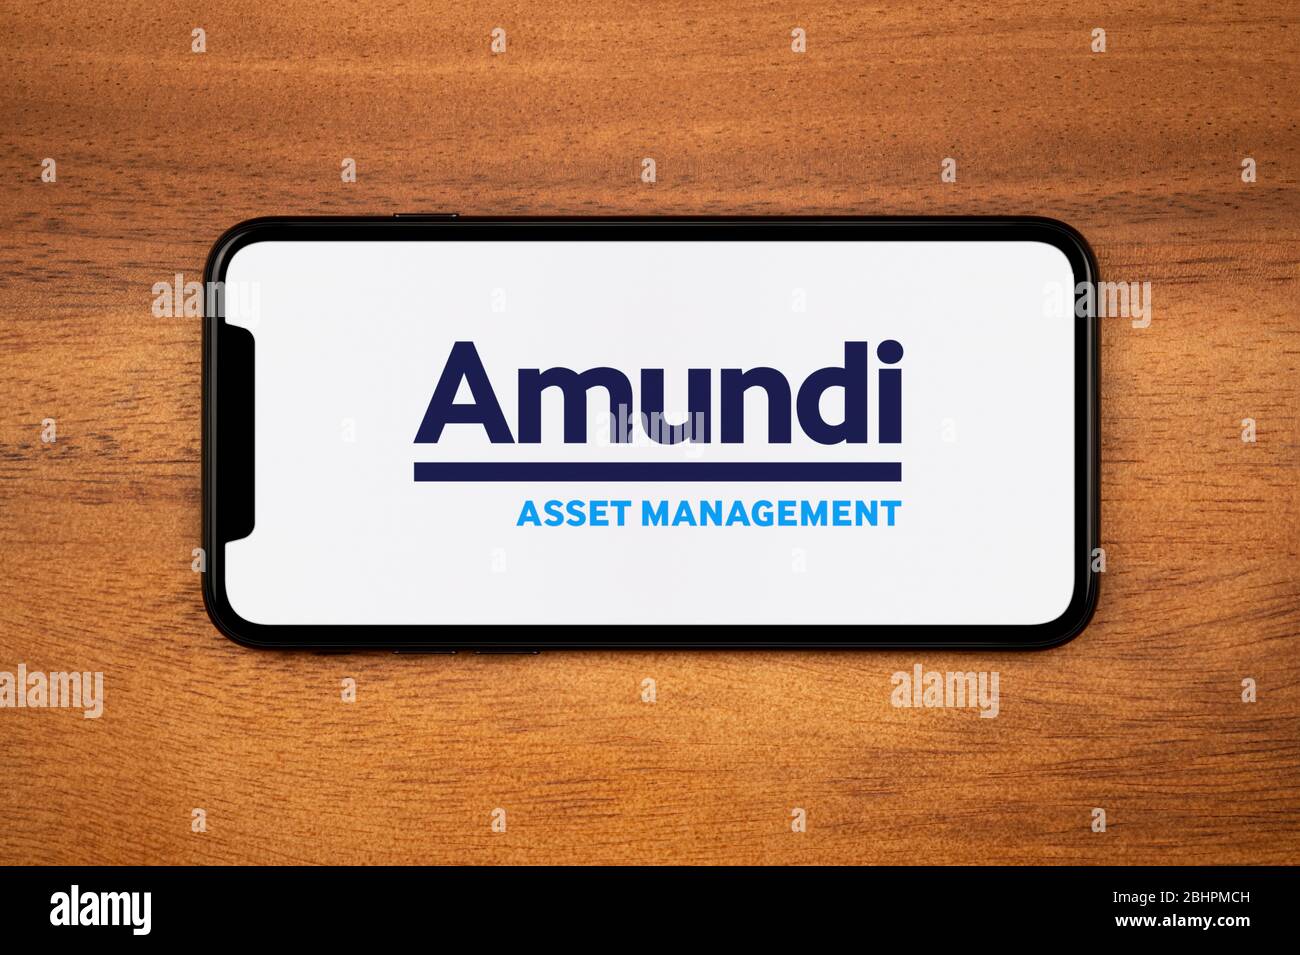 Un smartphone affichant le logo Amundi Asset Management repose sur une table en bois ordinaire (usage éditorial uniquement). Banque D'Images